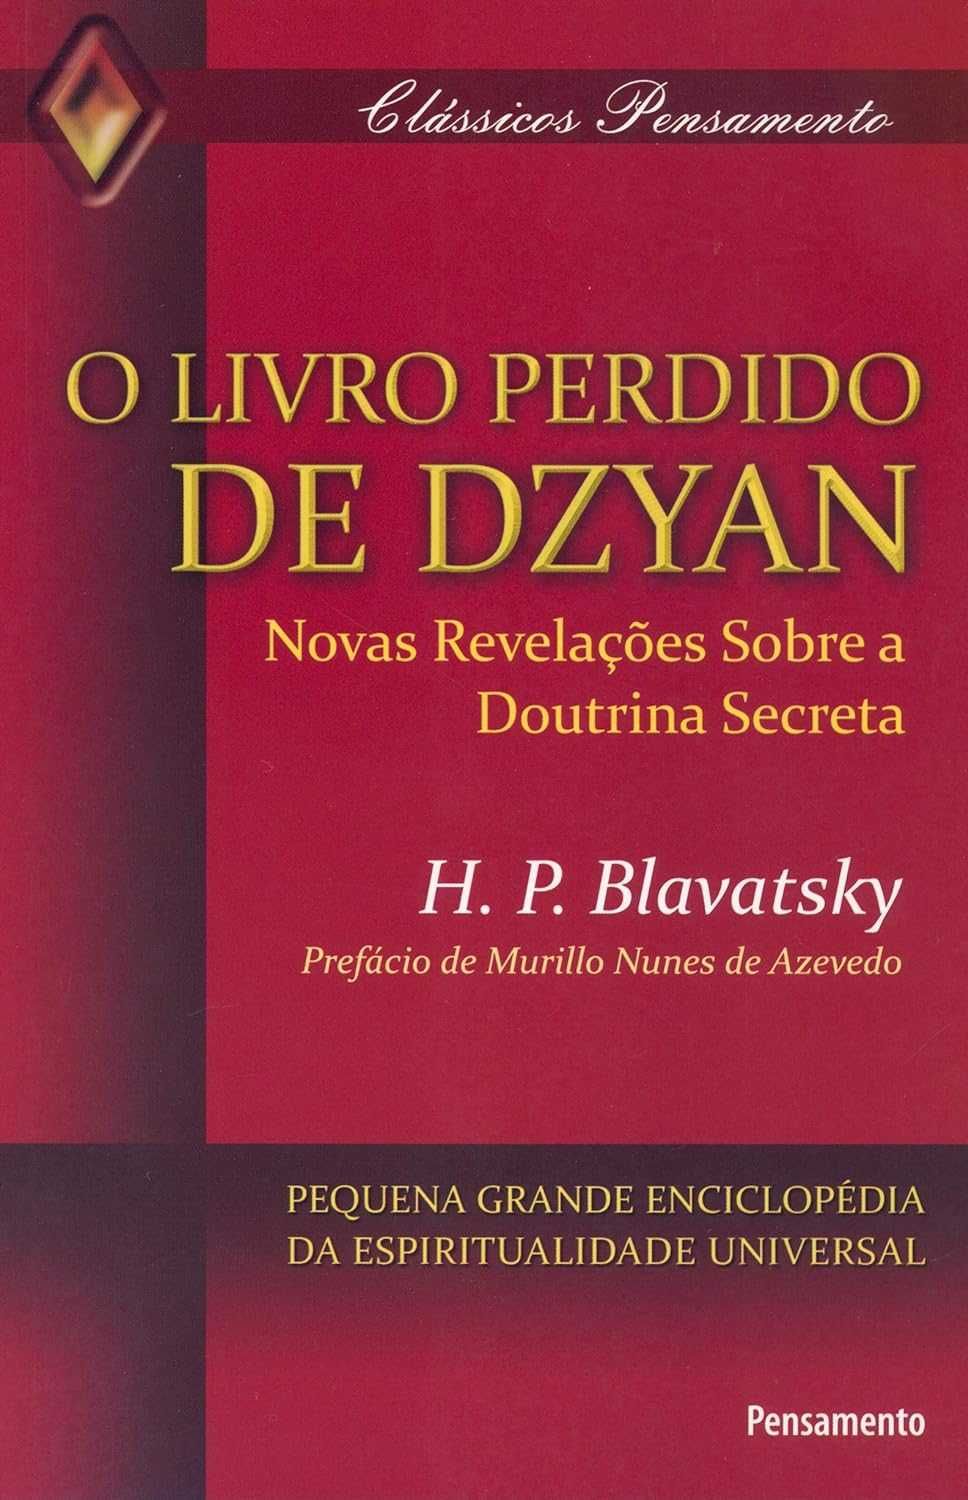 Helena Blavatsky - 19 obras da autora (livros novos)